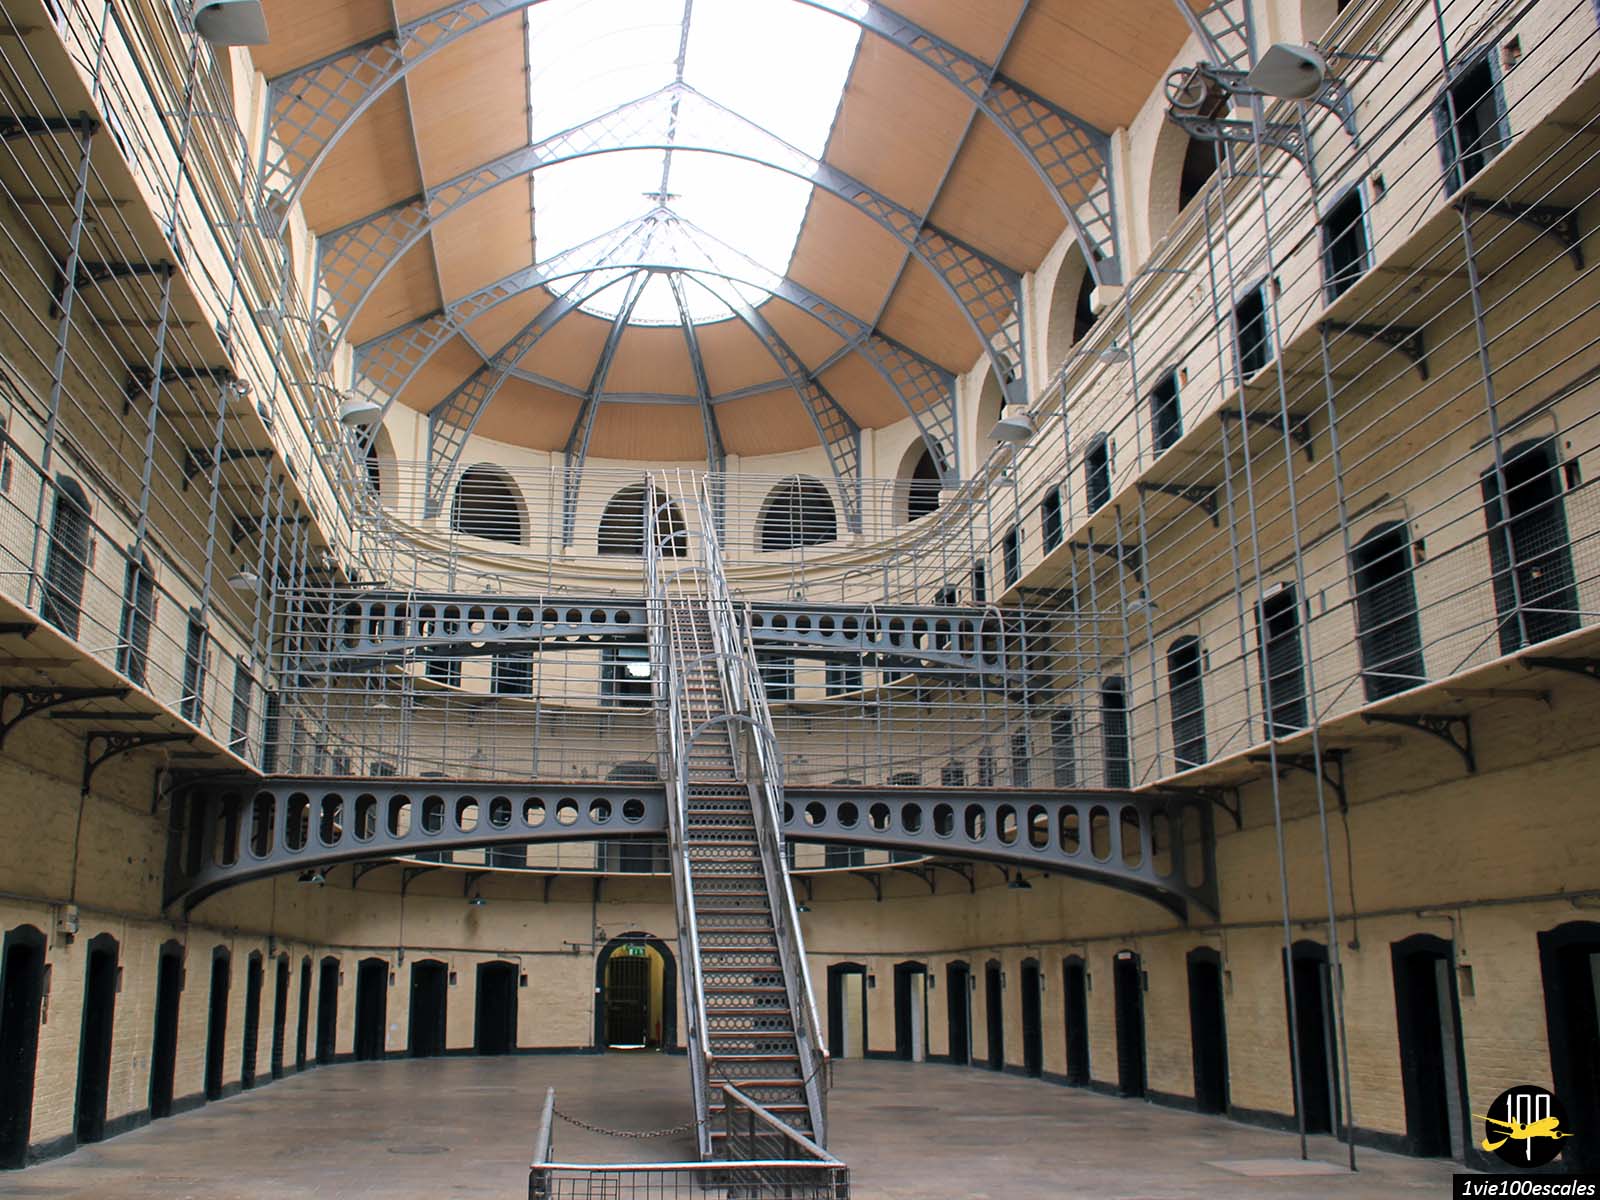 Kilmainham Gaol à Dublin est l'une des plus terribles prisons qu'ait jamais connu l'Europe. Une prison historique, aujourd'hui visitable